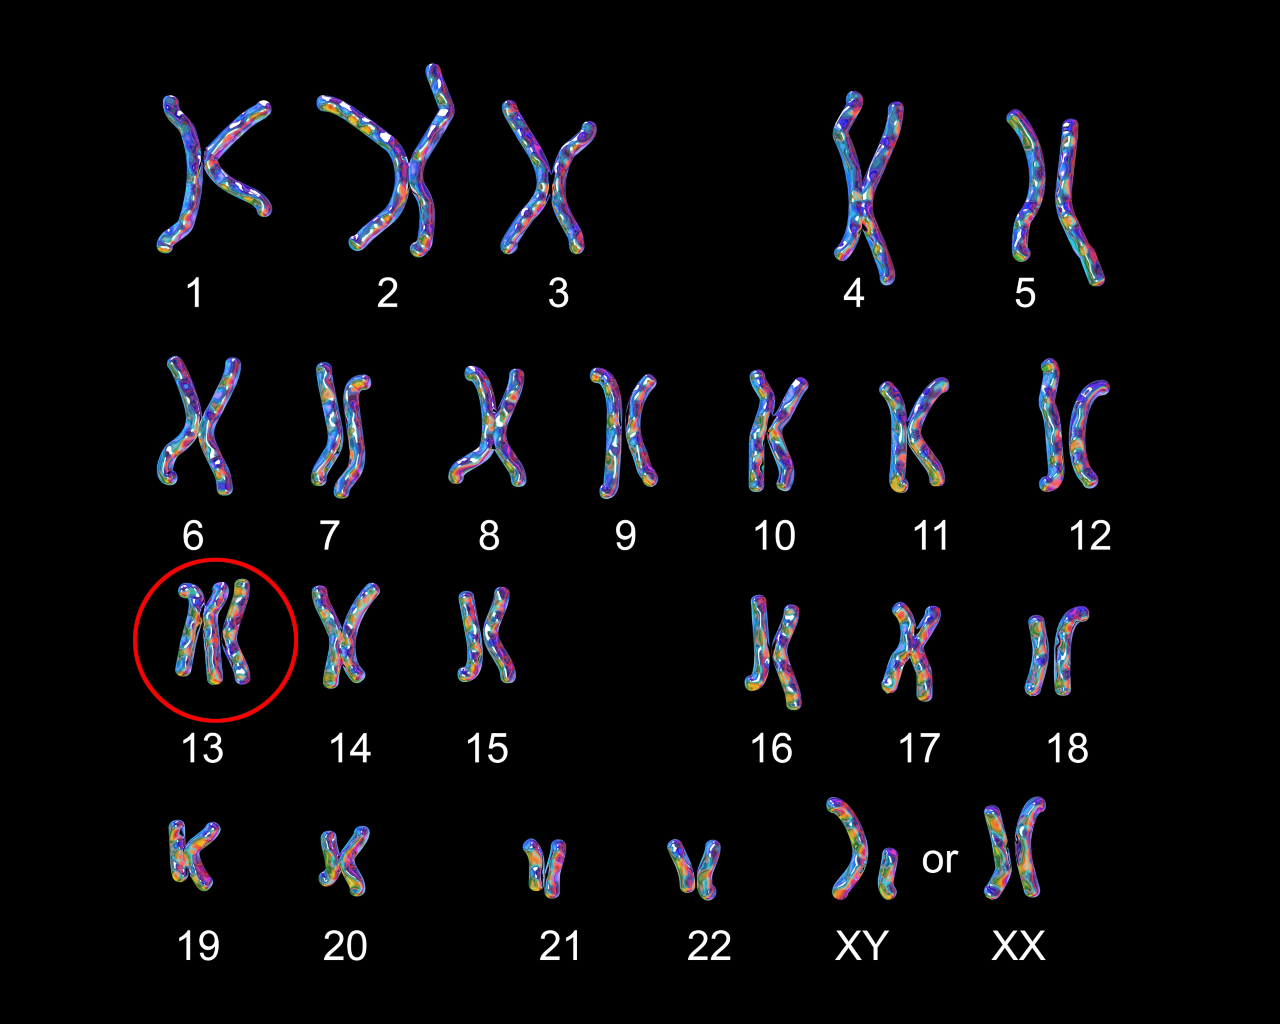 Patau-syndrome karyotype, labeled. Trisomy 13. 3D illustration